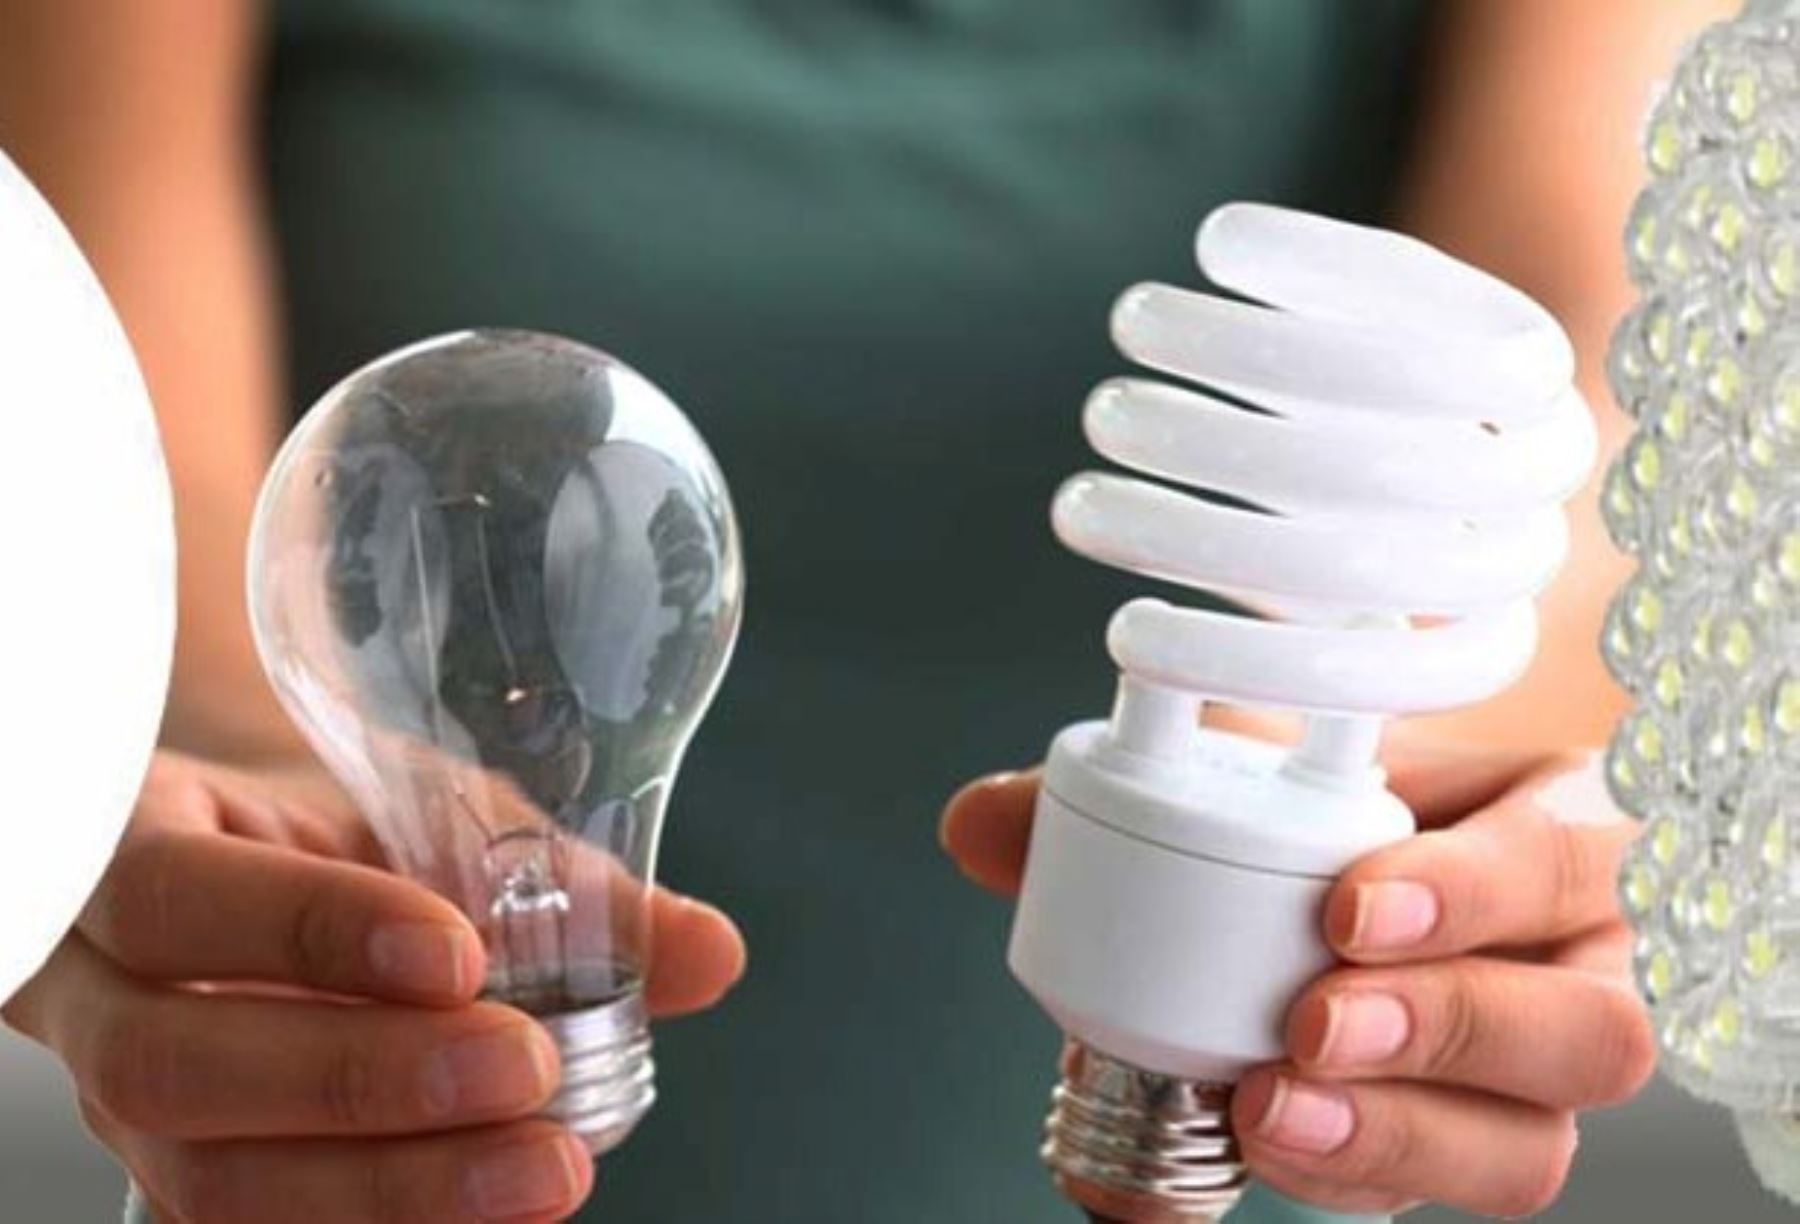 MEM: Focos LED permite un ahorro en costos de energía cercano al 60%